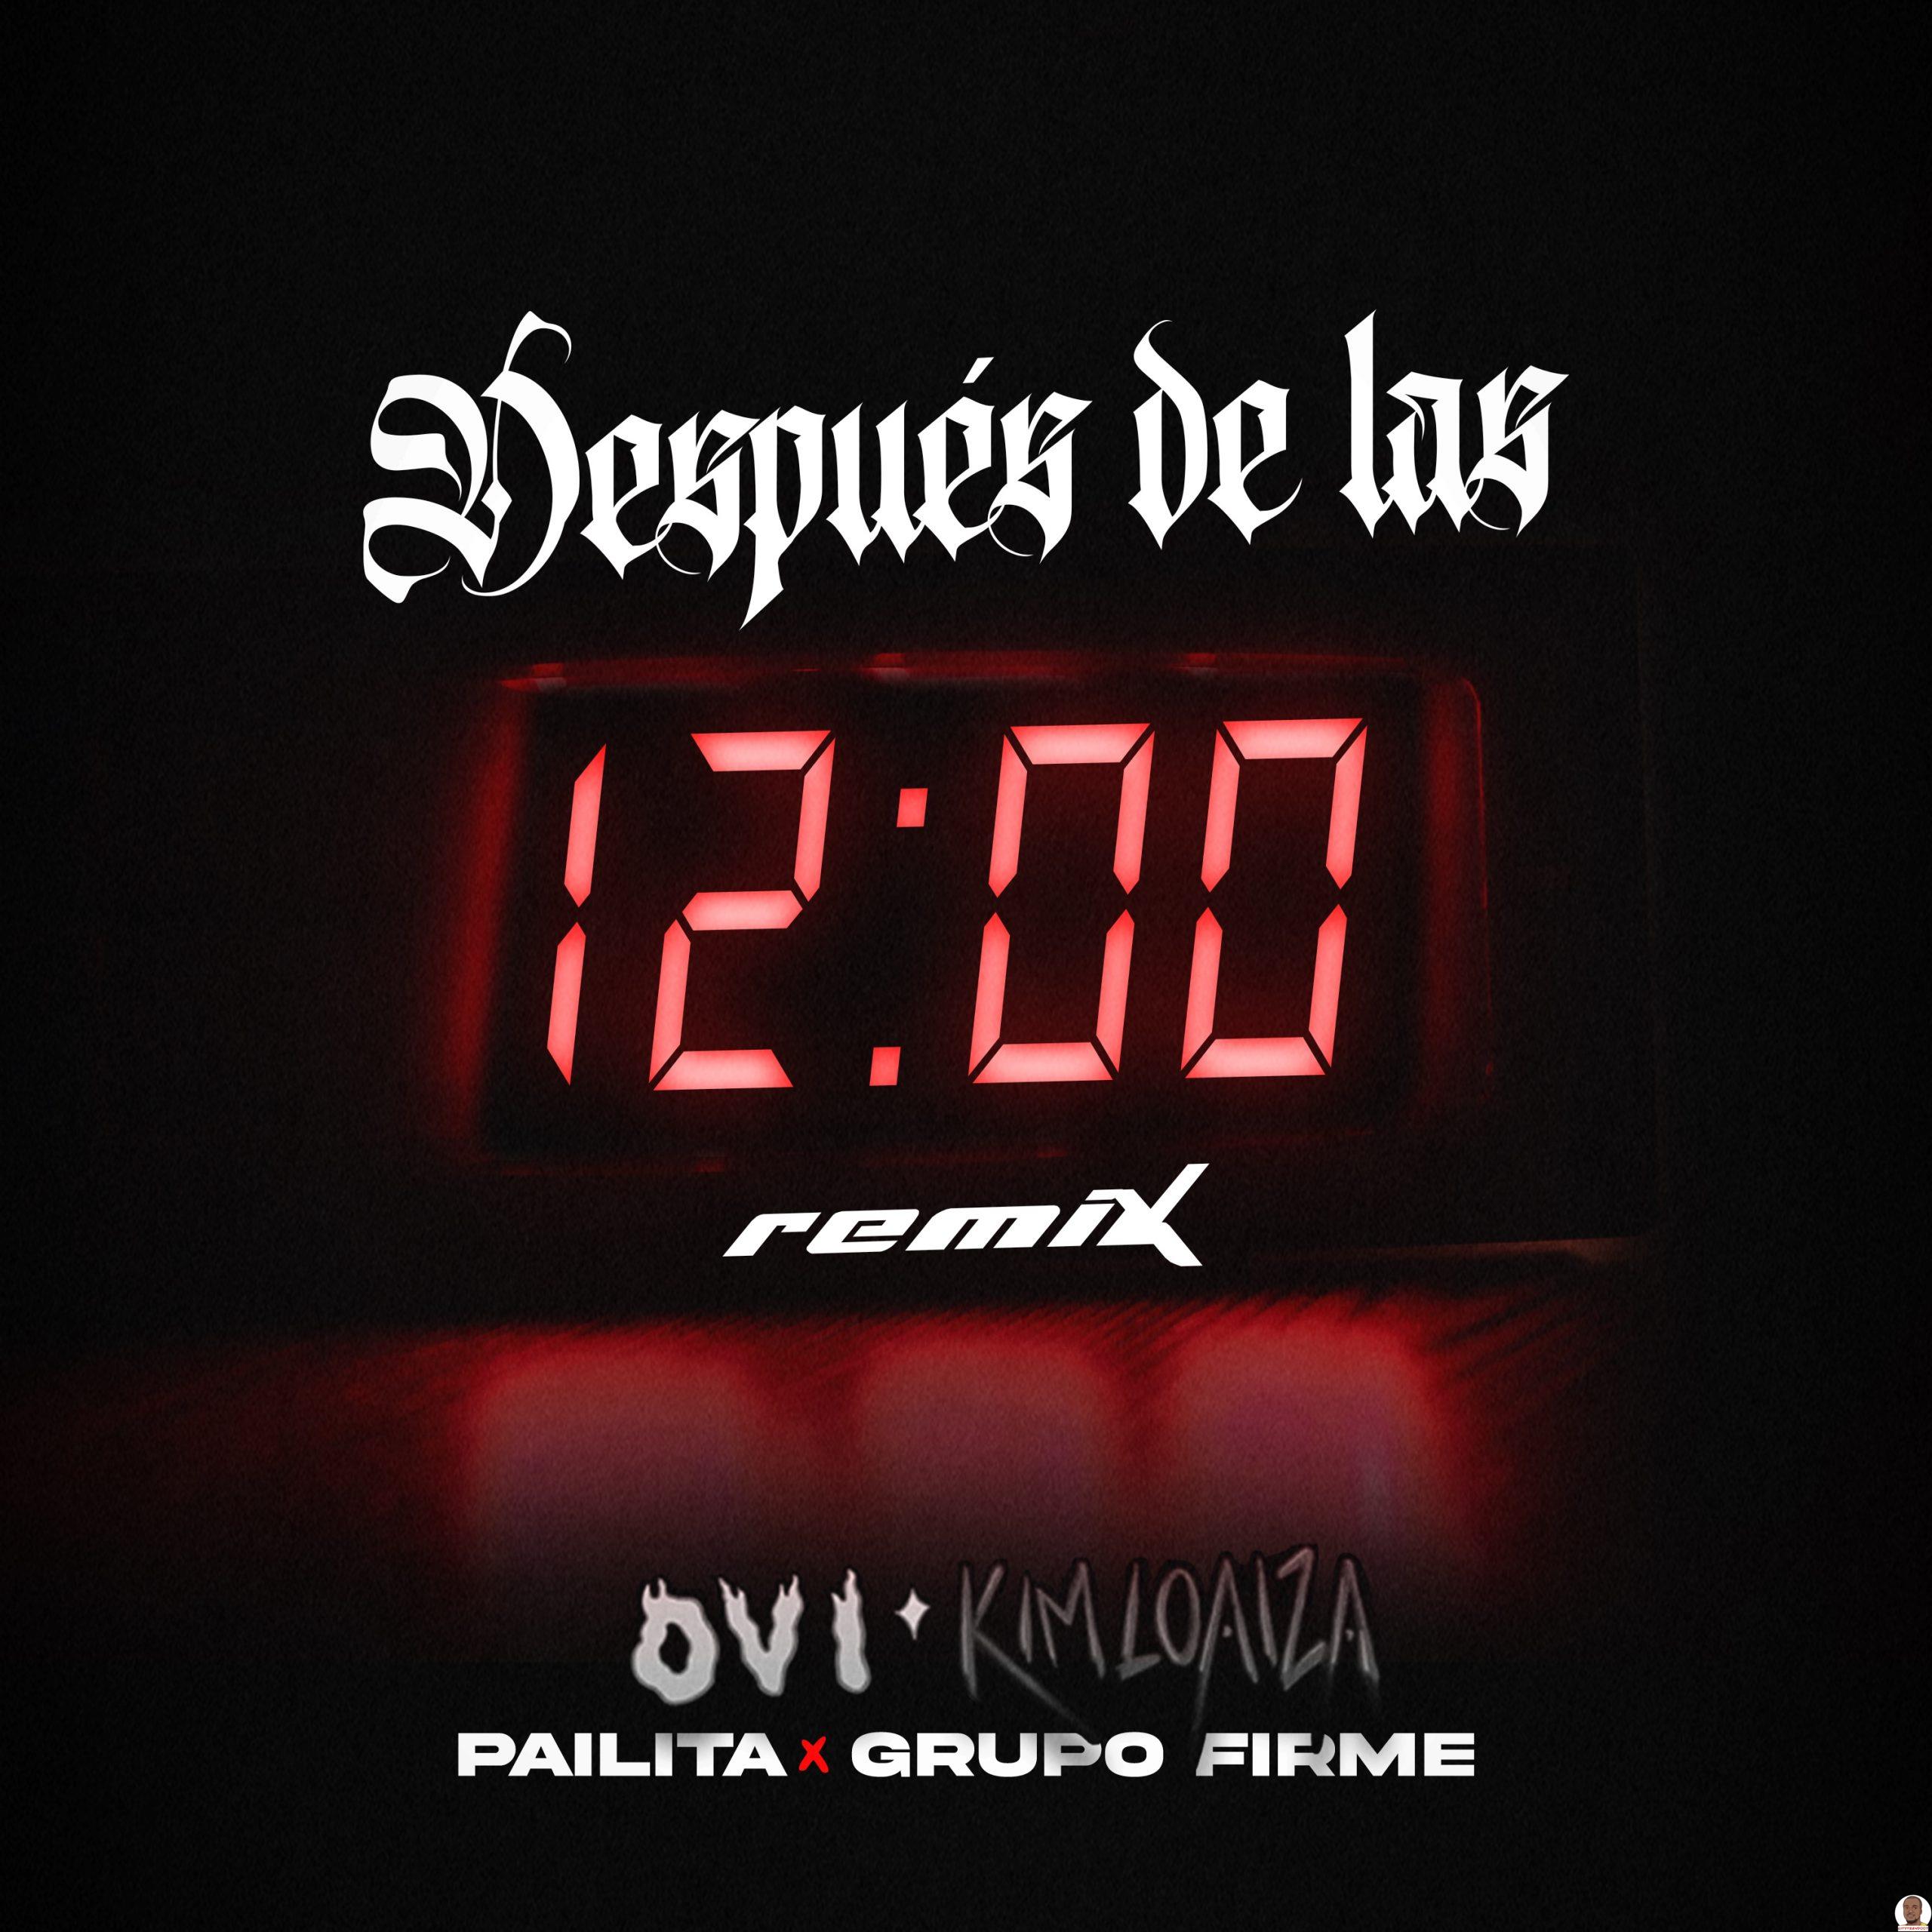 Ovi Kim Loaiza Pailita Grupo Firme — Despues De Las 12 Remix scaled